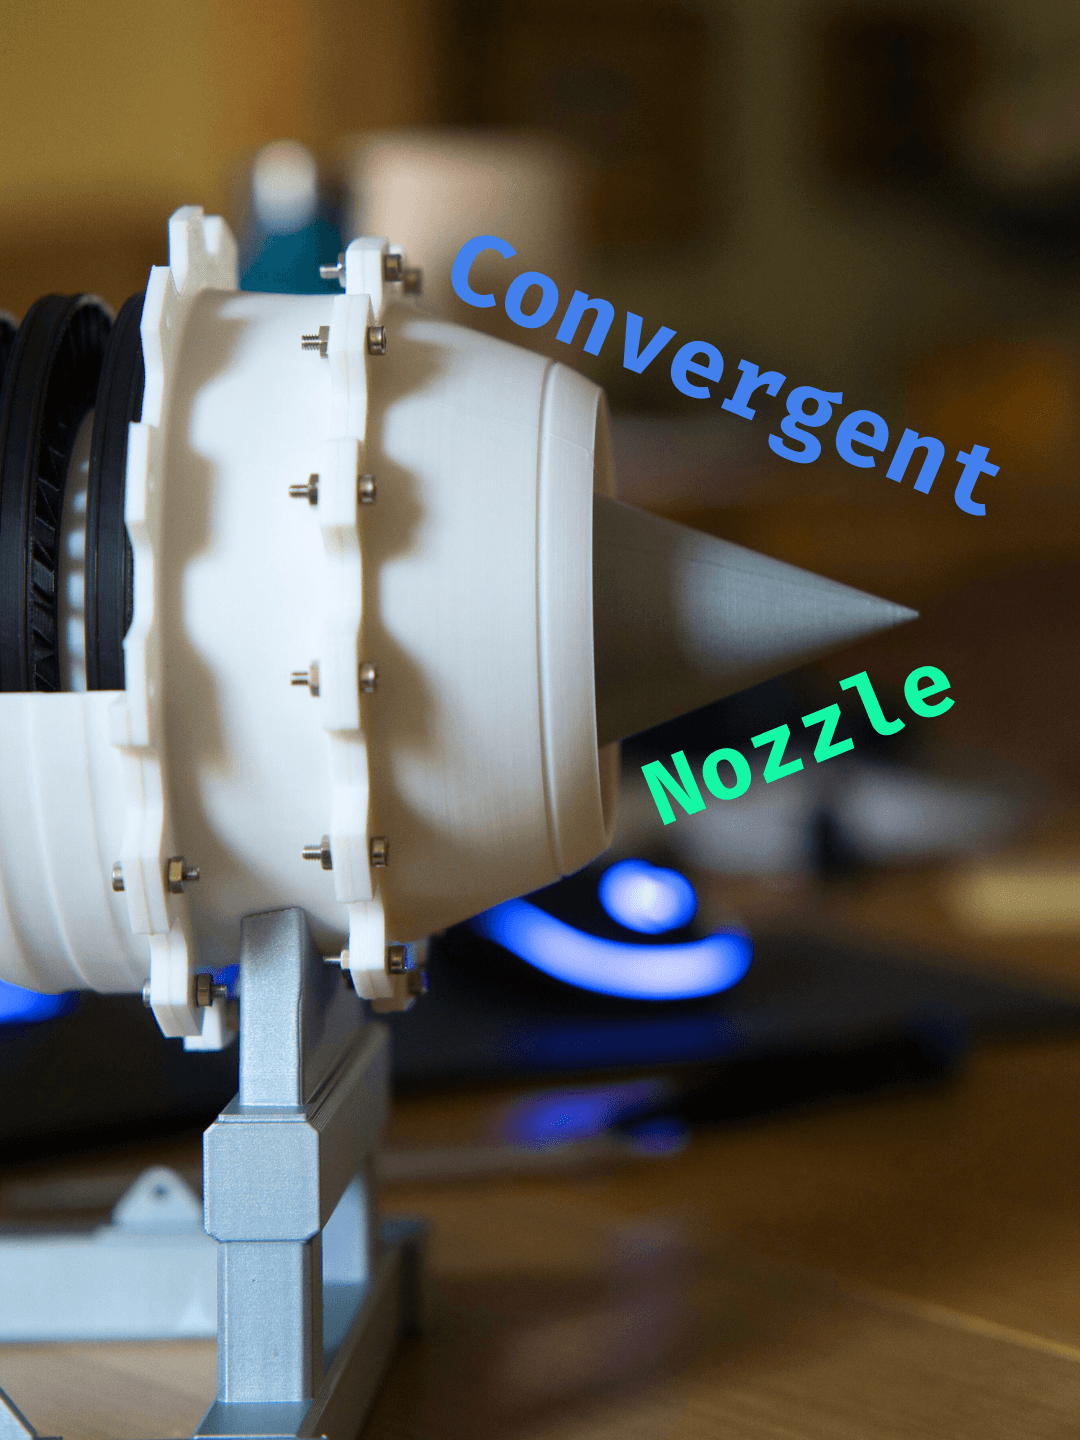 Convergent Nozzle / Jet engine nozzle 3d model